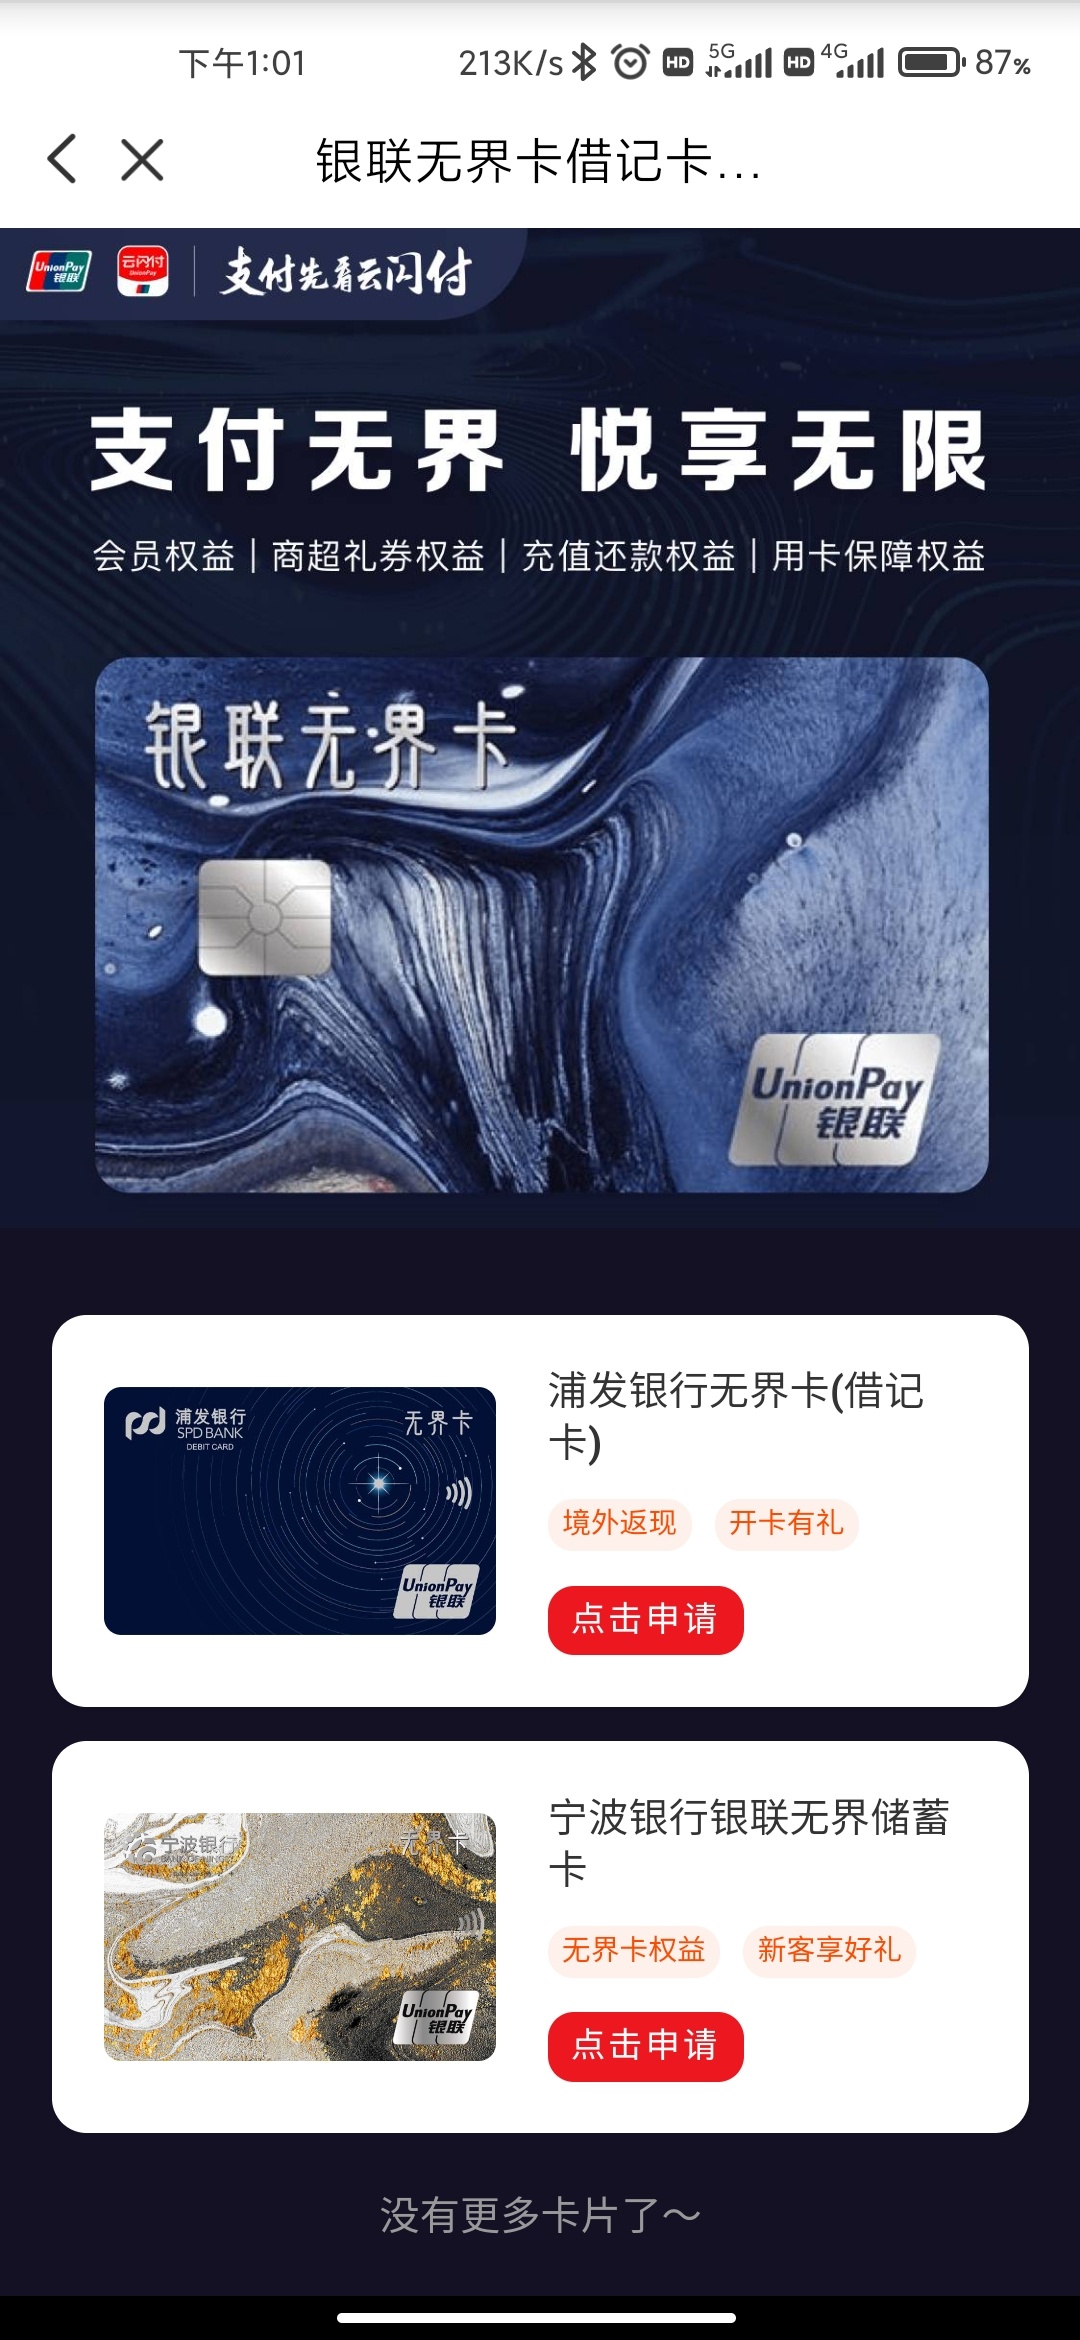 宁波银行信用卡图片